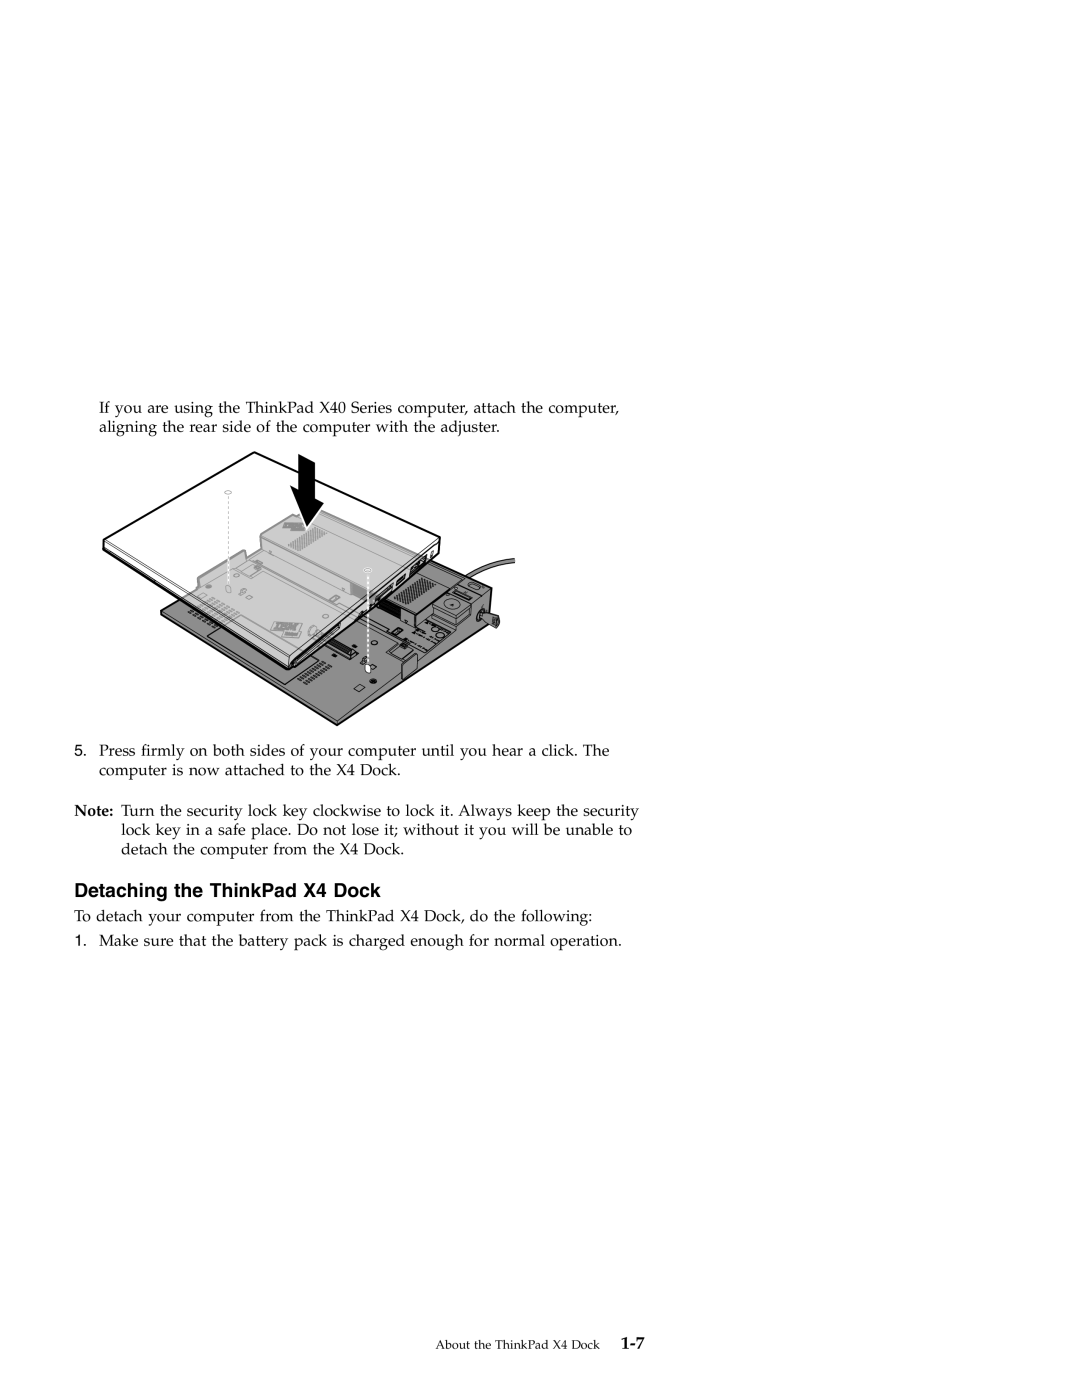 IBM manual Detaching the ThinkPad X4 Dock 